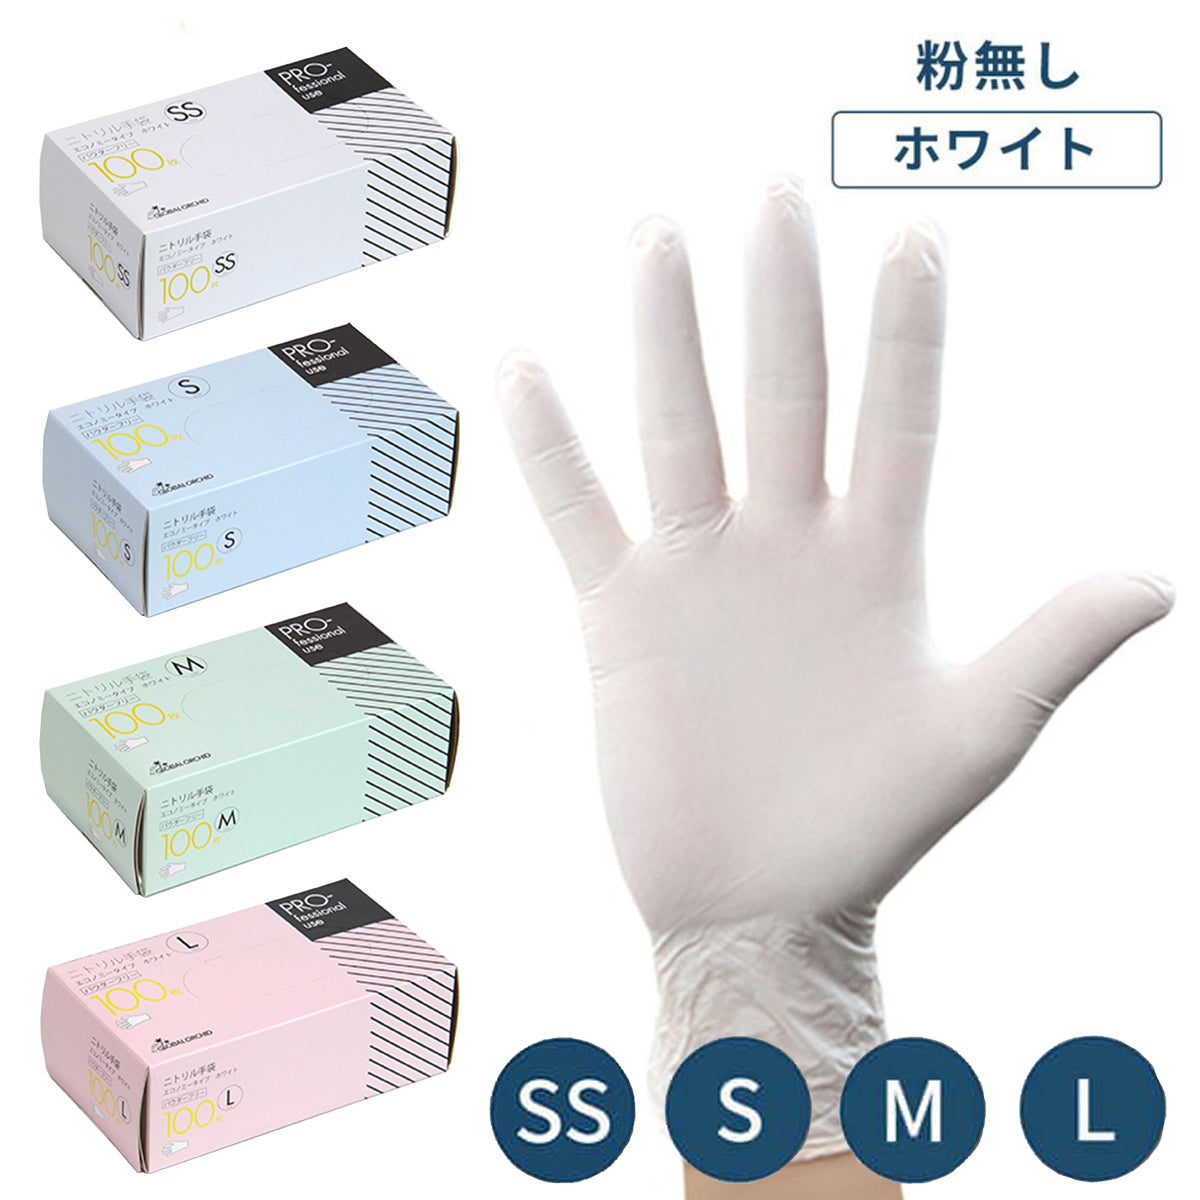 GOニトリル手袋 エコノミータイプ ホワイト 粉なし 100枚/箱